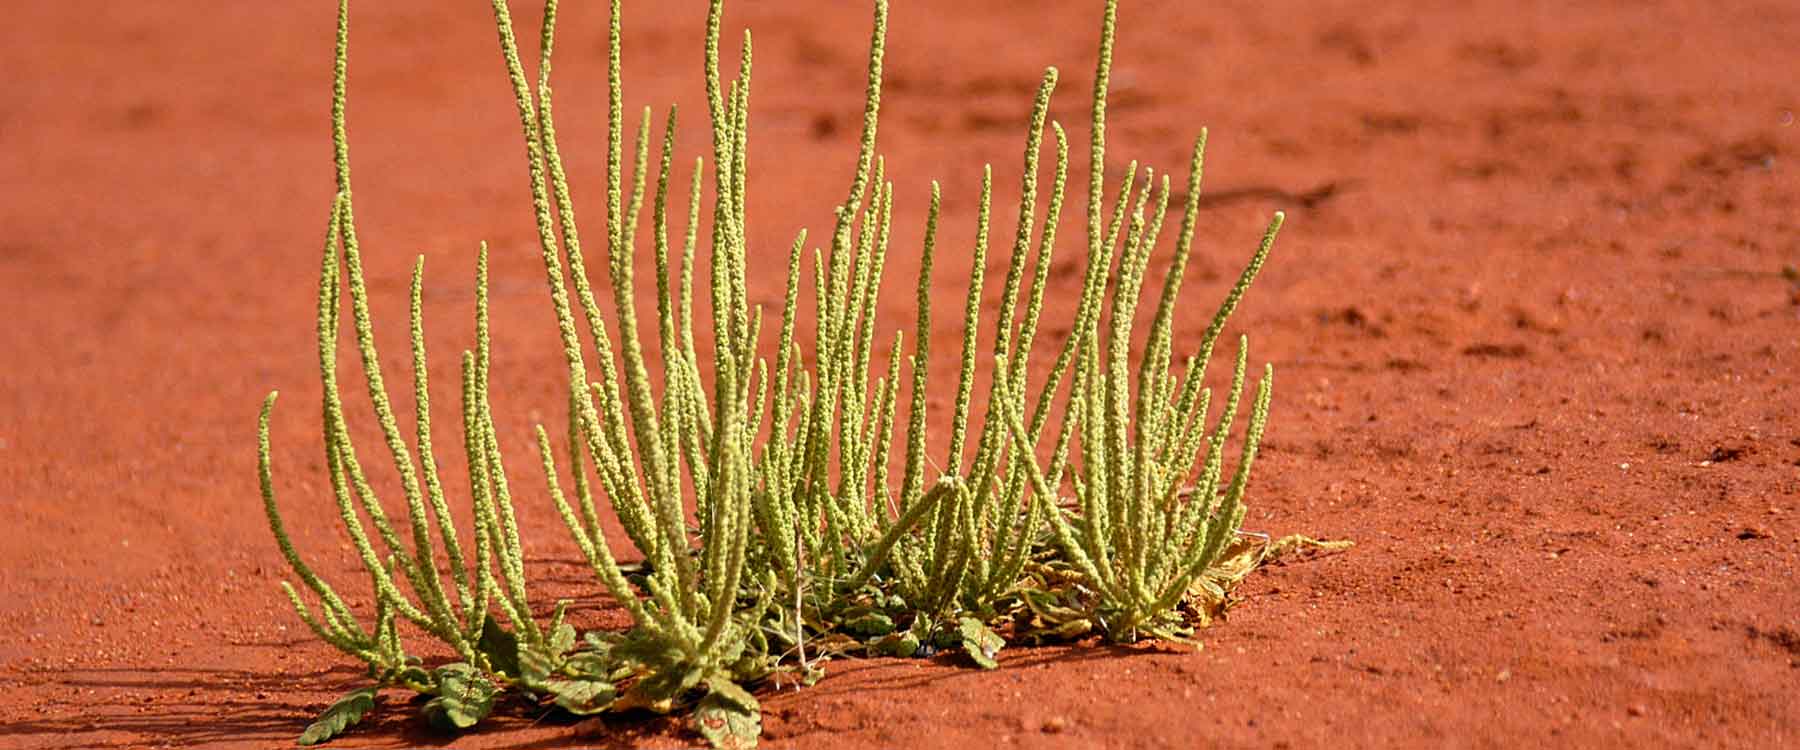 Alpar (Rat Tail) plant growing in Central Australia